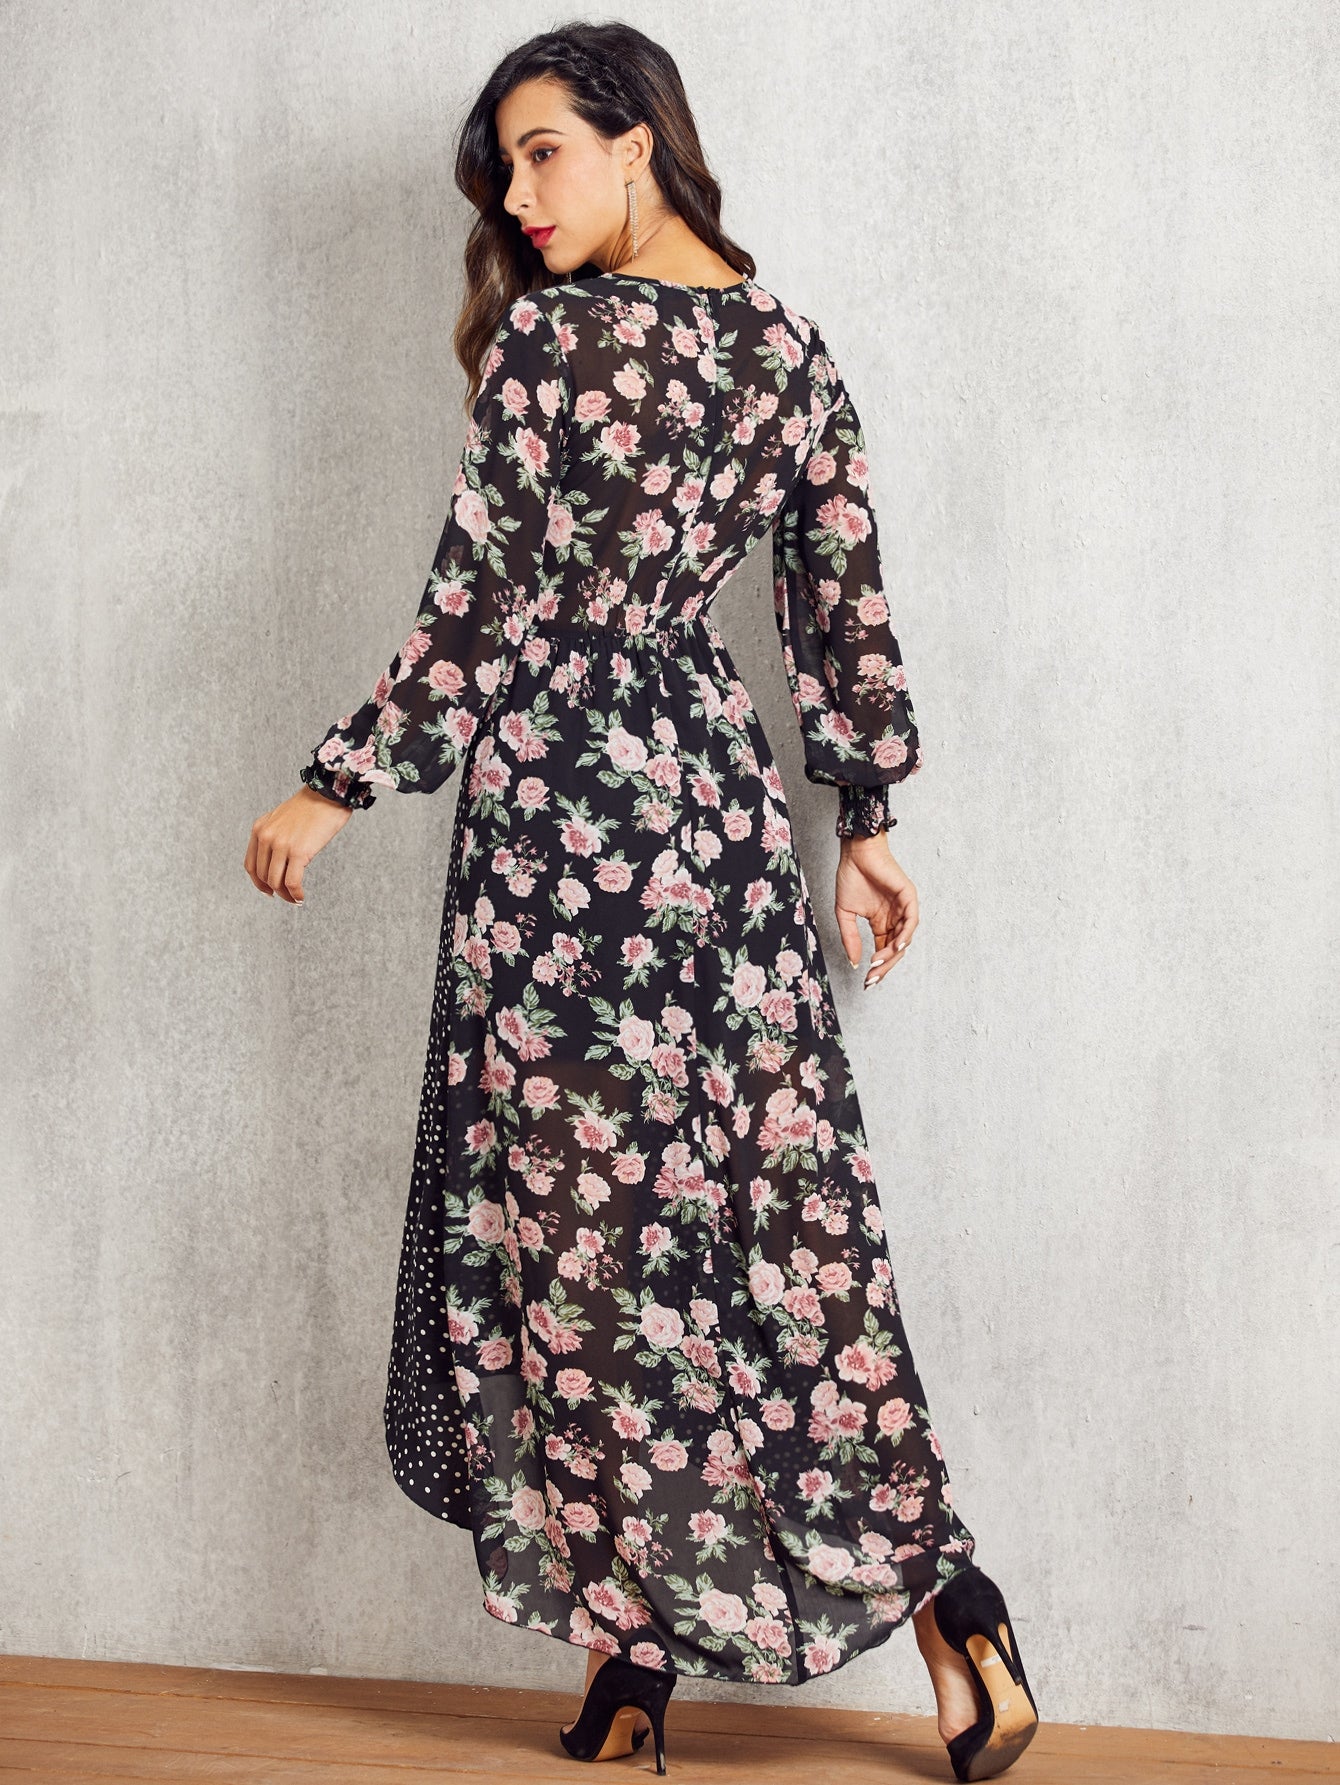 SBetro Polka-dot & Floral High Low Hem Dress